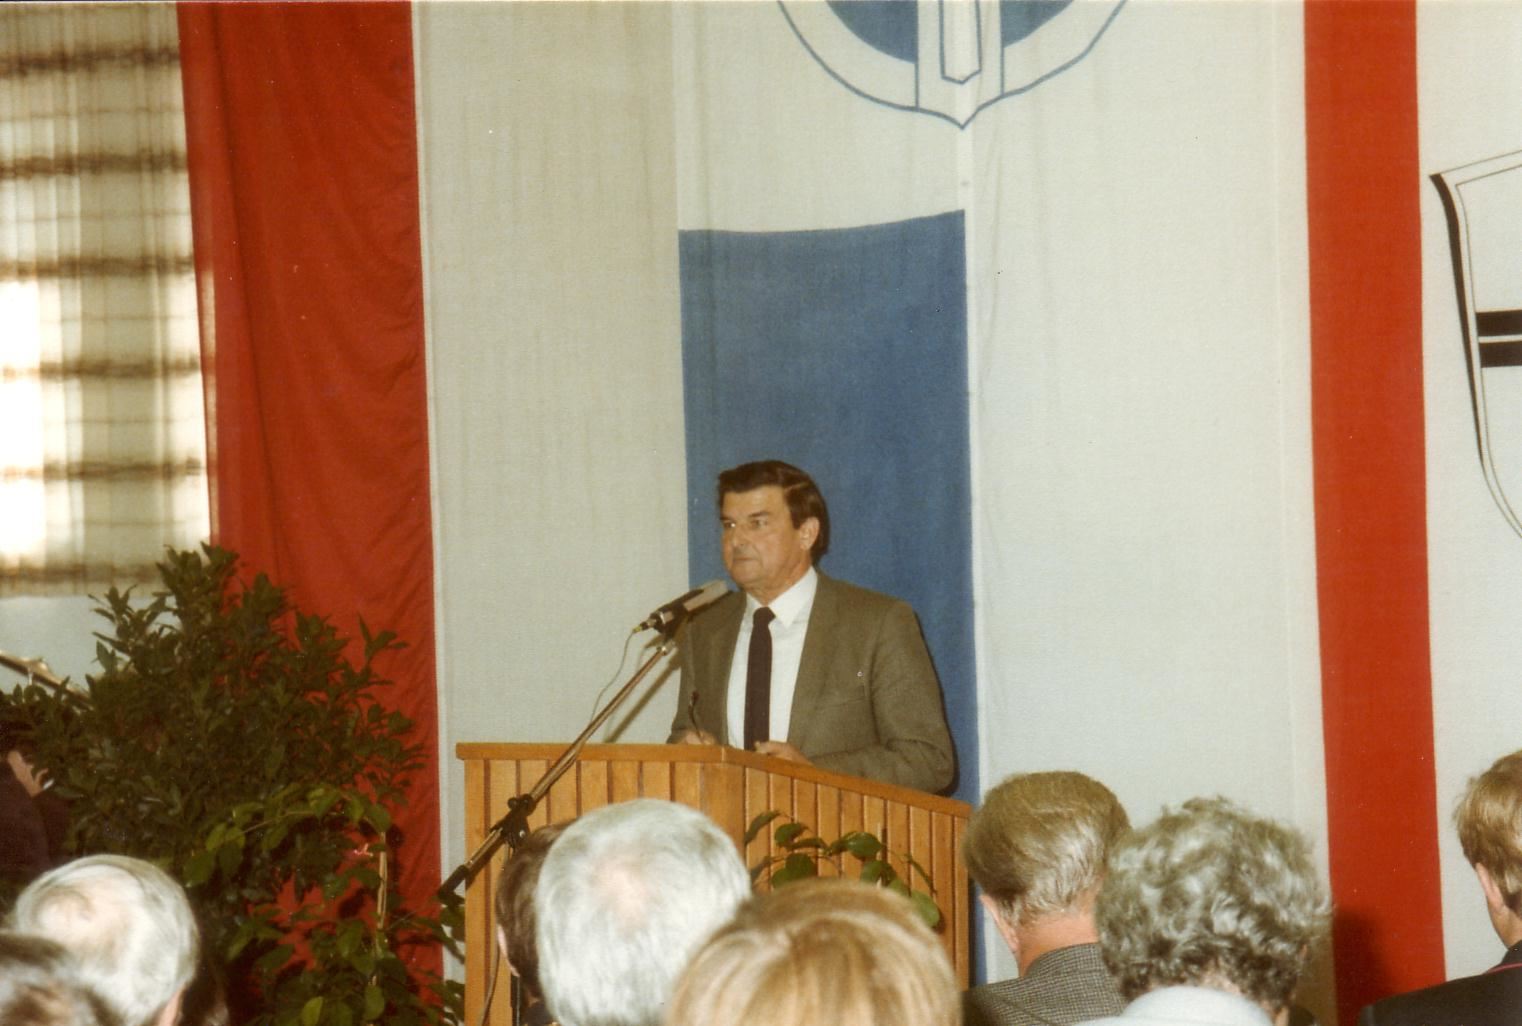 1984 Einweihung Feuerwehrgerätehaus, Bert Mihm gratuliert für die örtlichen Vereine